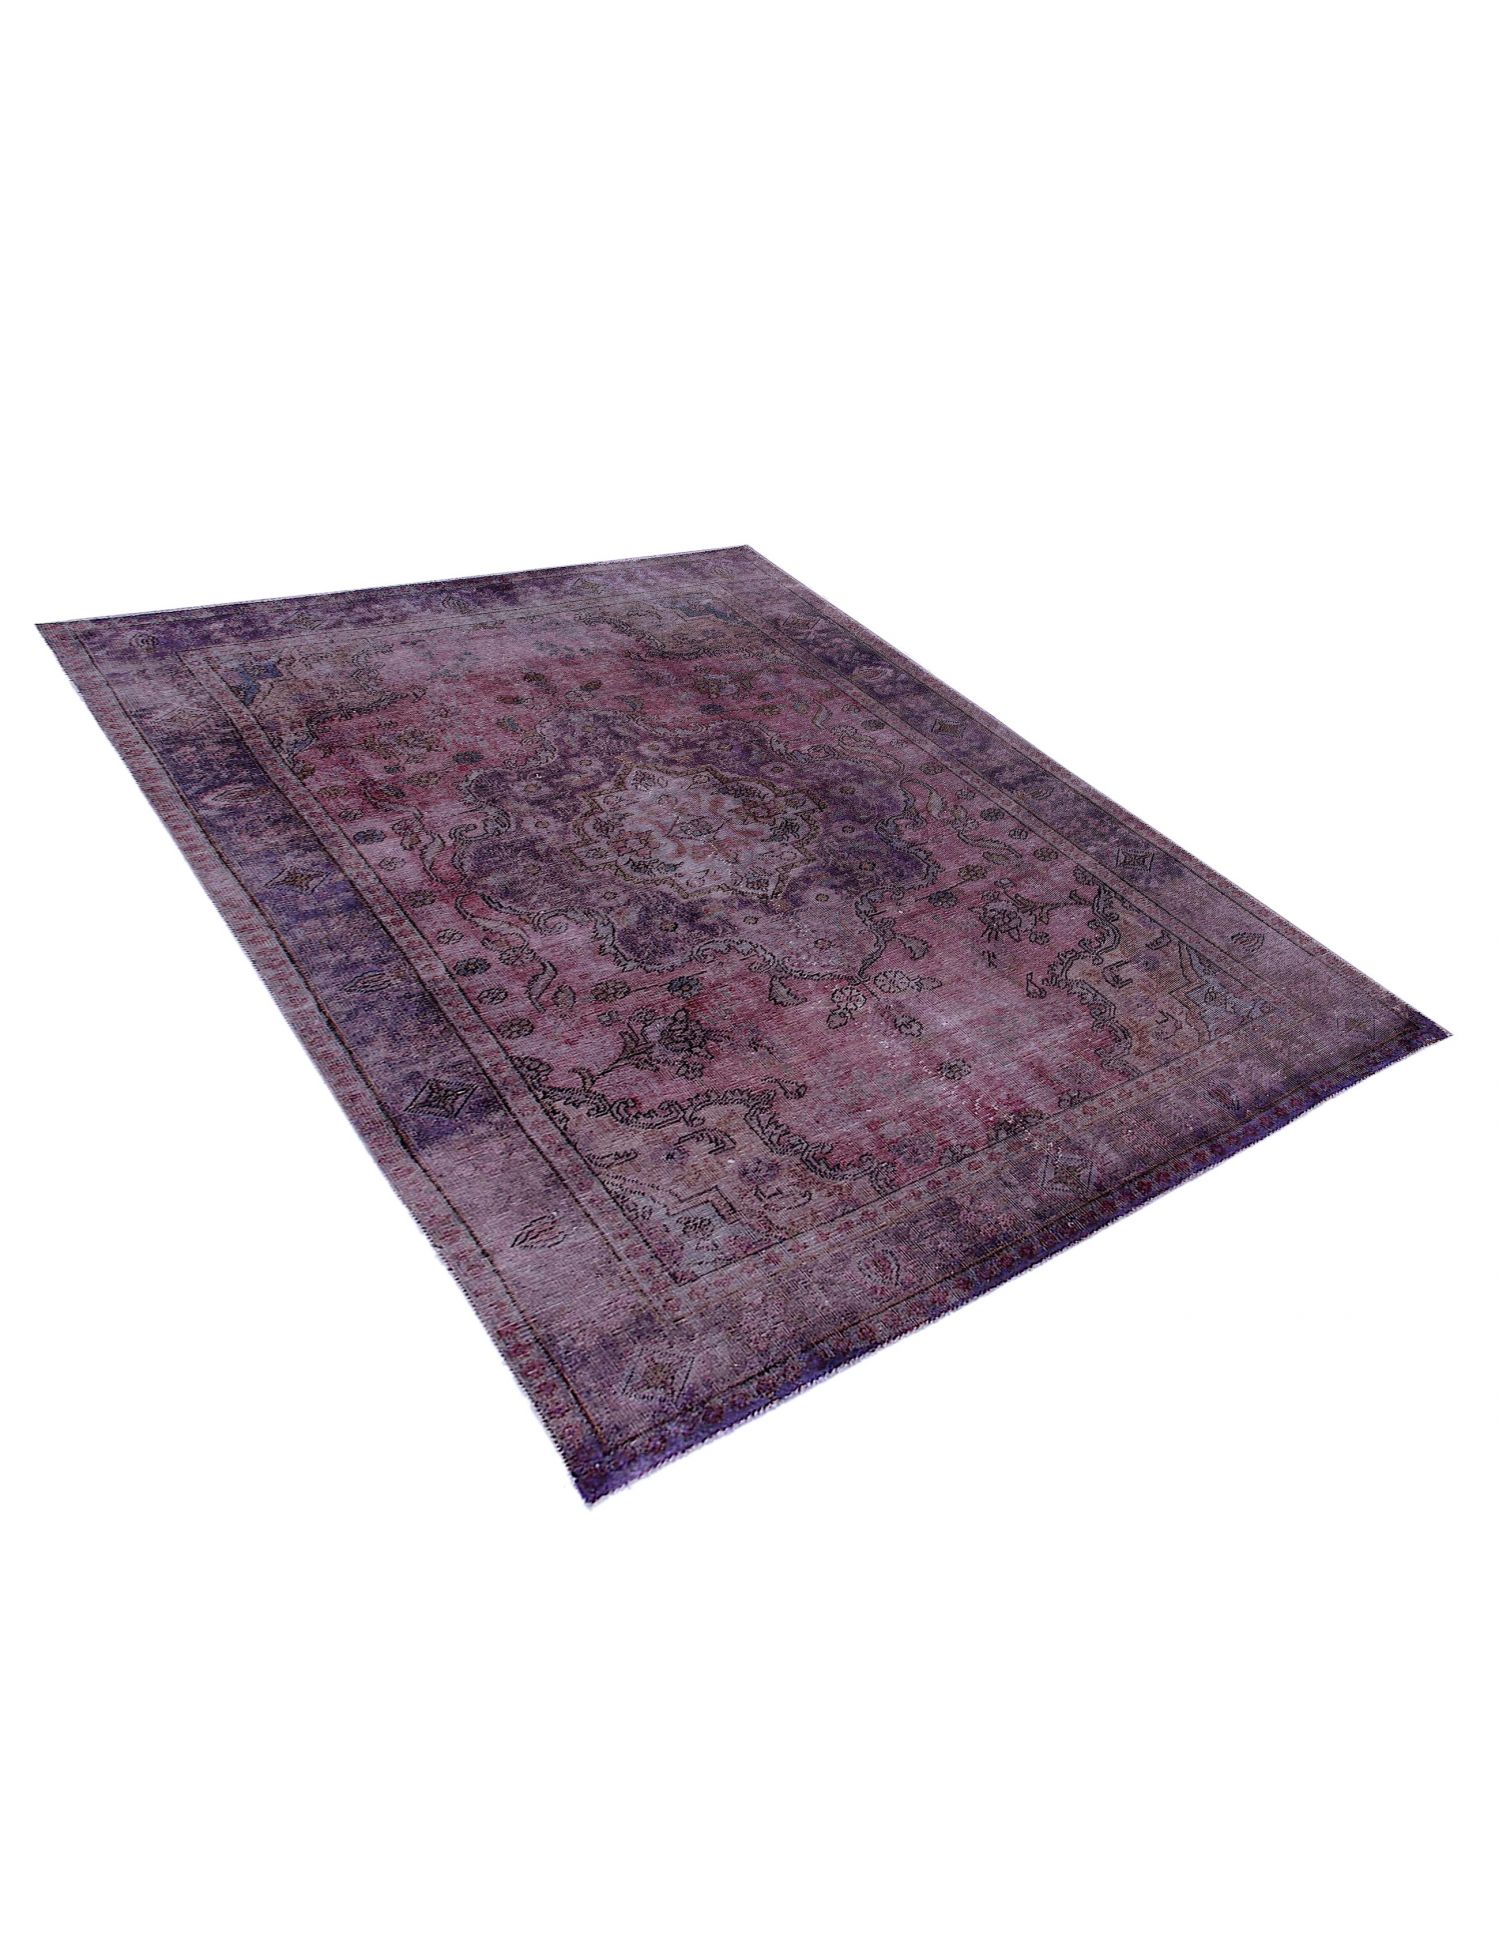 Persischer Vintage Teppich  lila <br/>290 x 195 cm